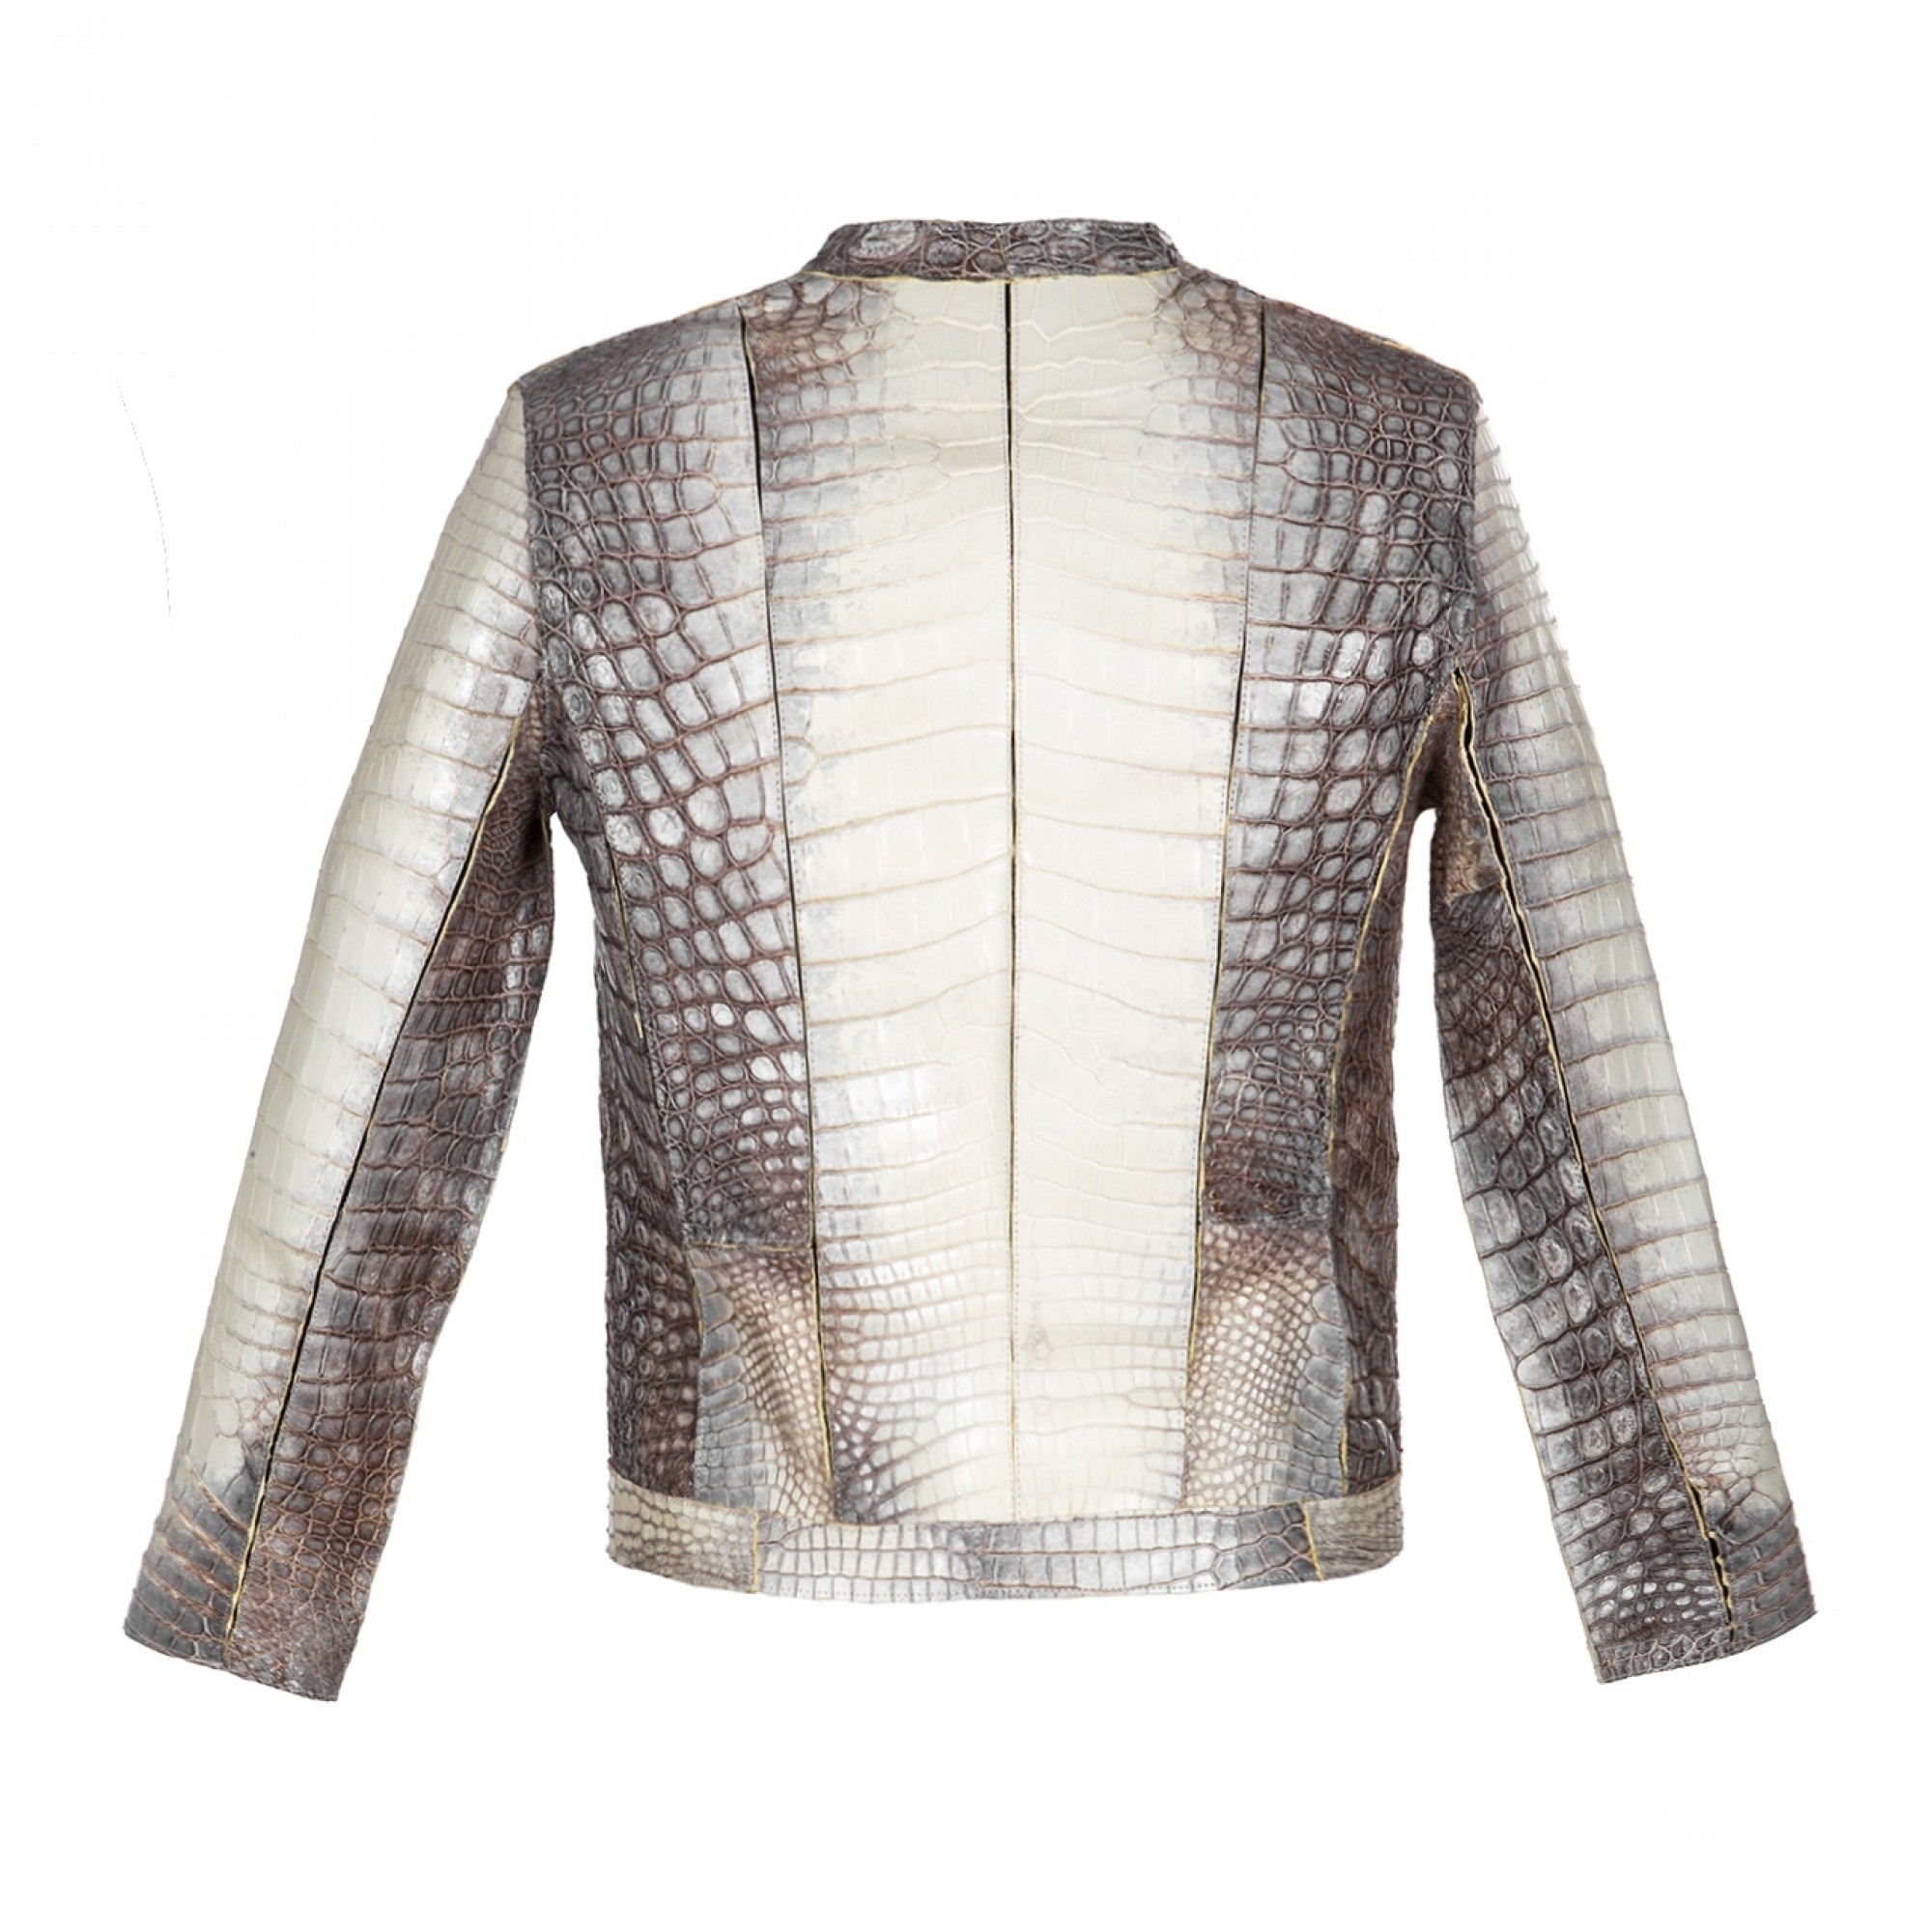 Himalayan Crocodile Jacket, Custom Leather Jacket